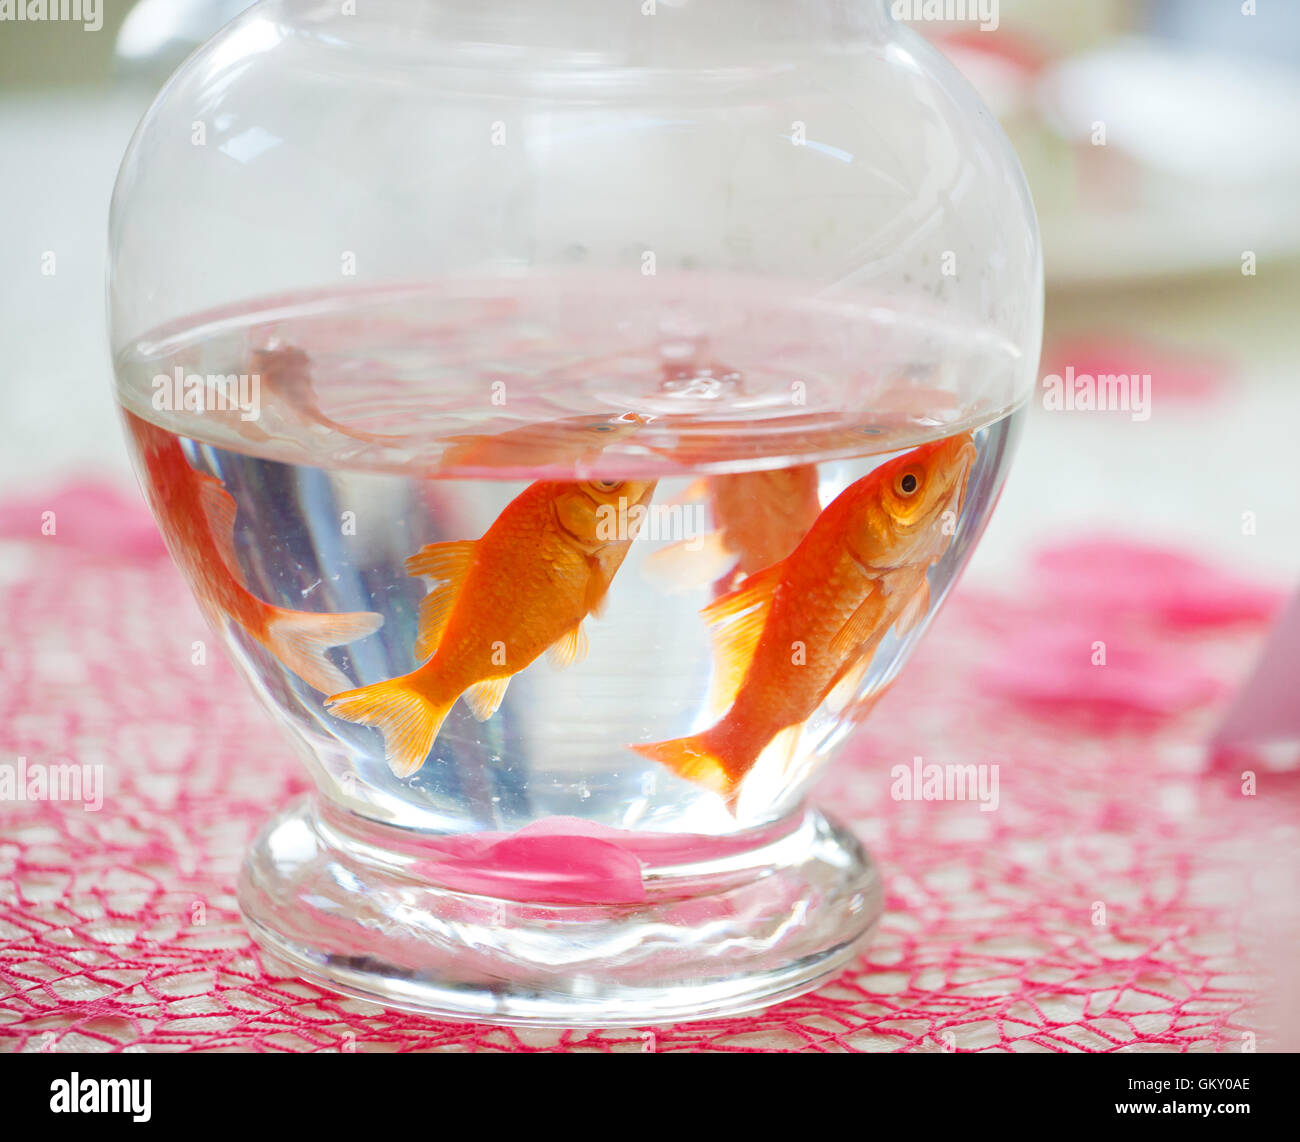 Goldfish en ampolla utilizados como centros de mesa en una fiesta. Foto de stock